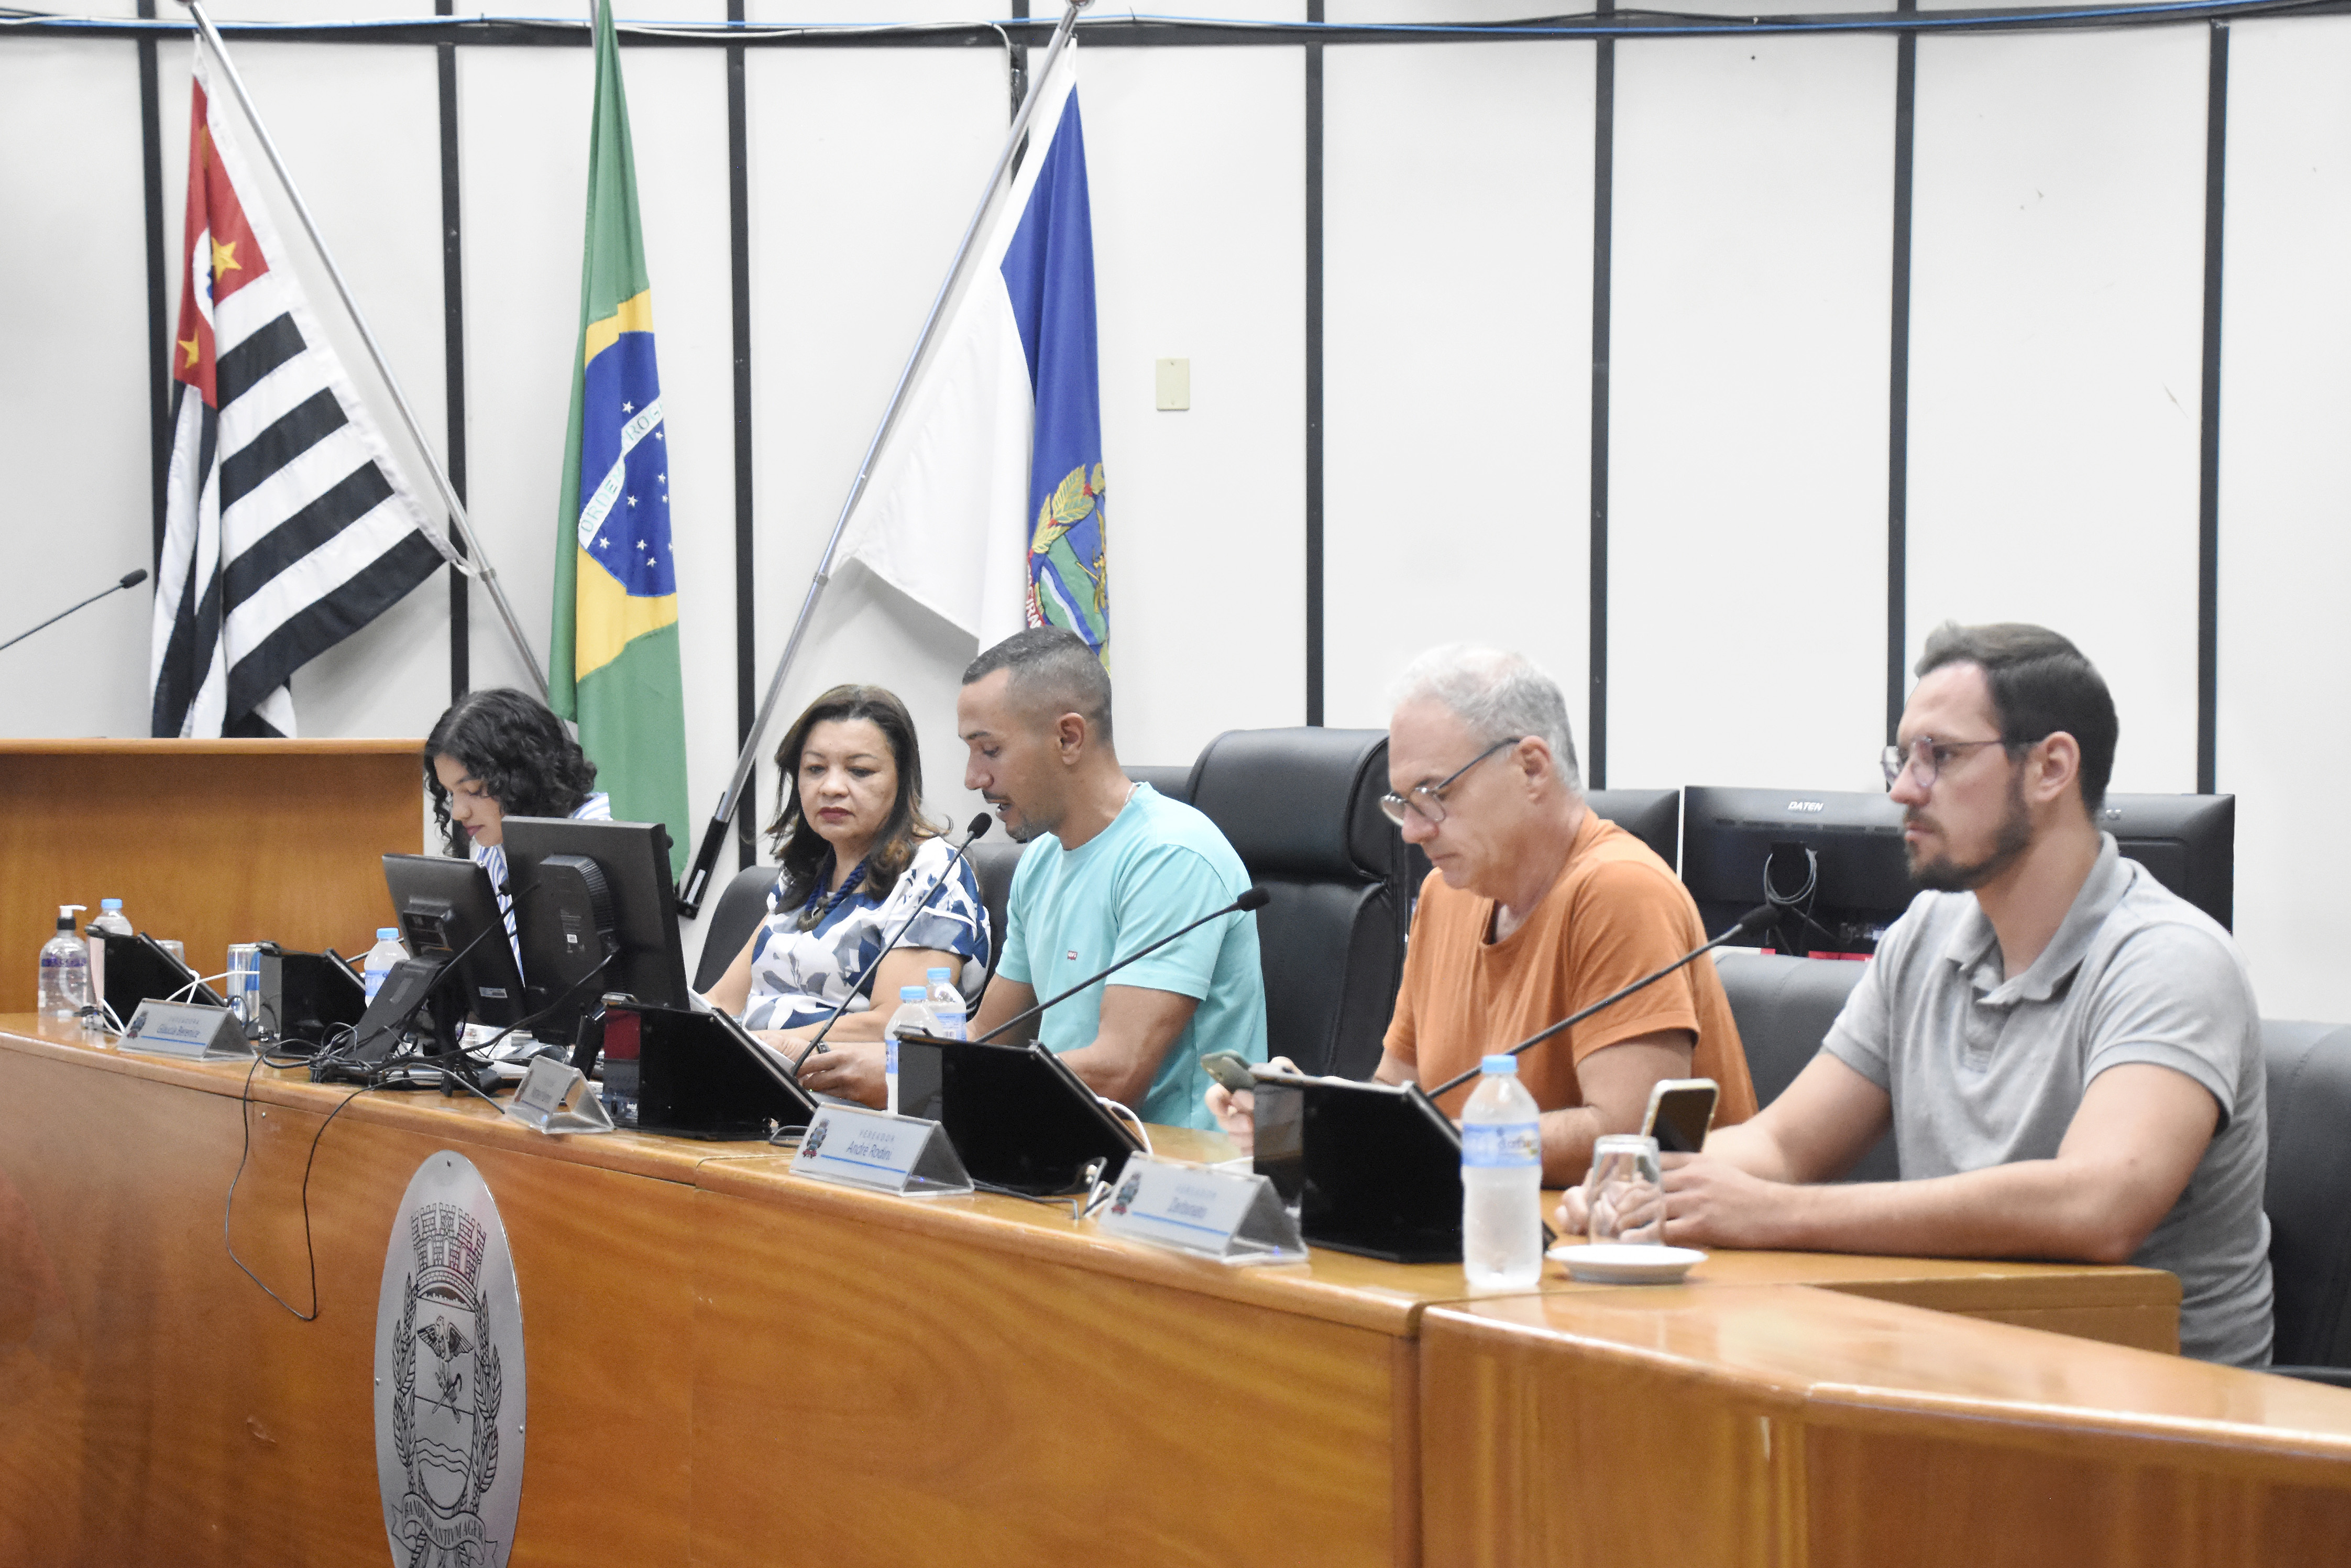 Imagem com os membros da comissão - vereadores Moreno, Gláucia, Zerbinato, Duda e André Rodini